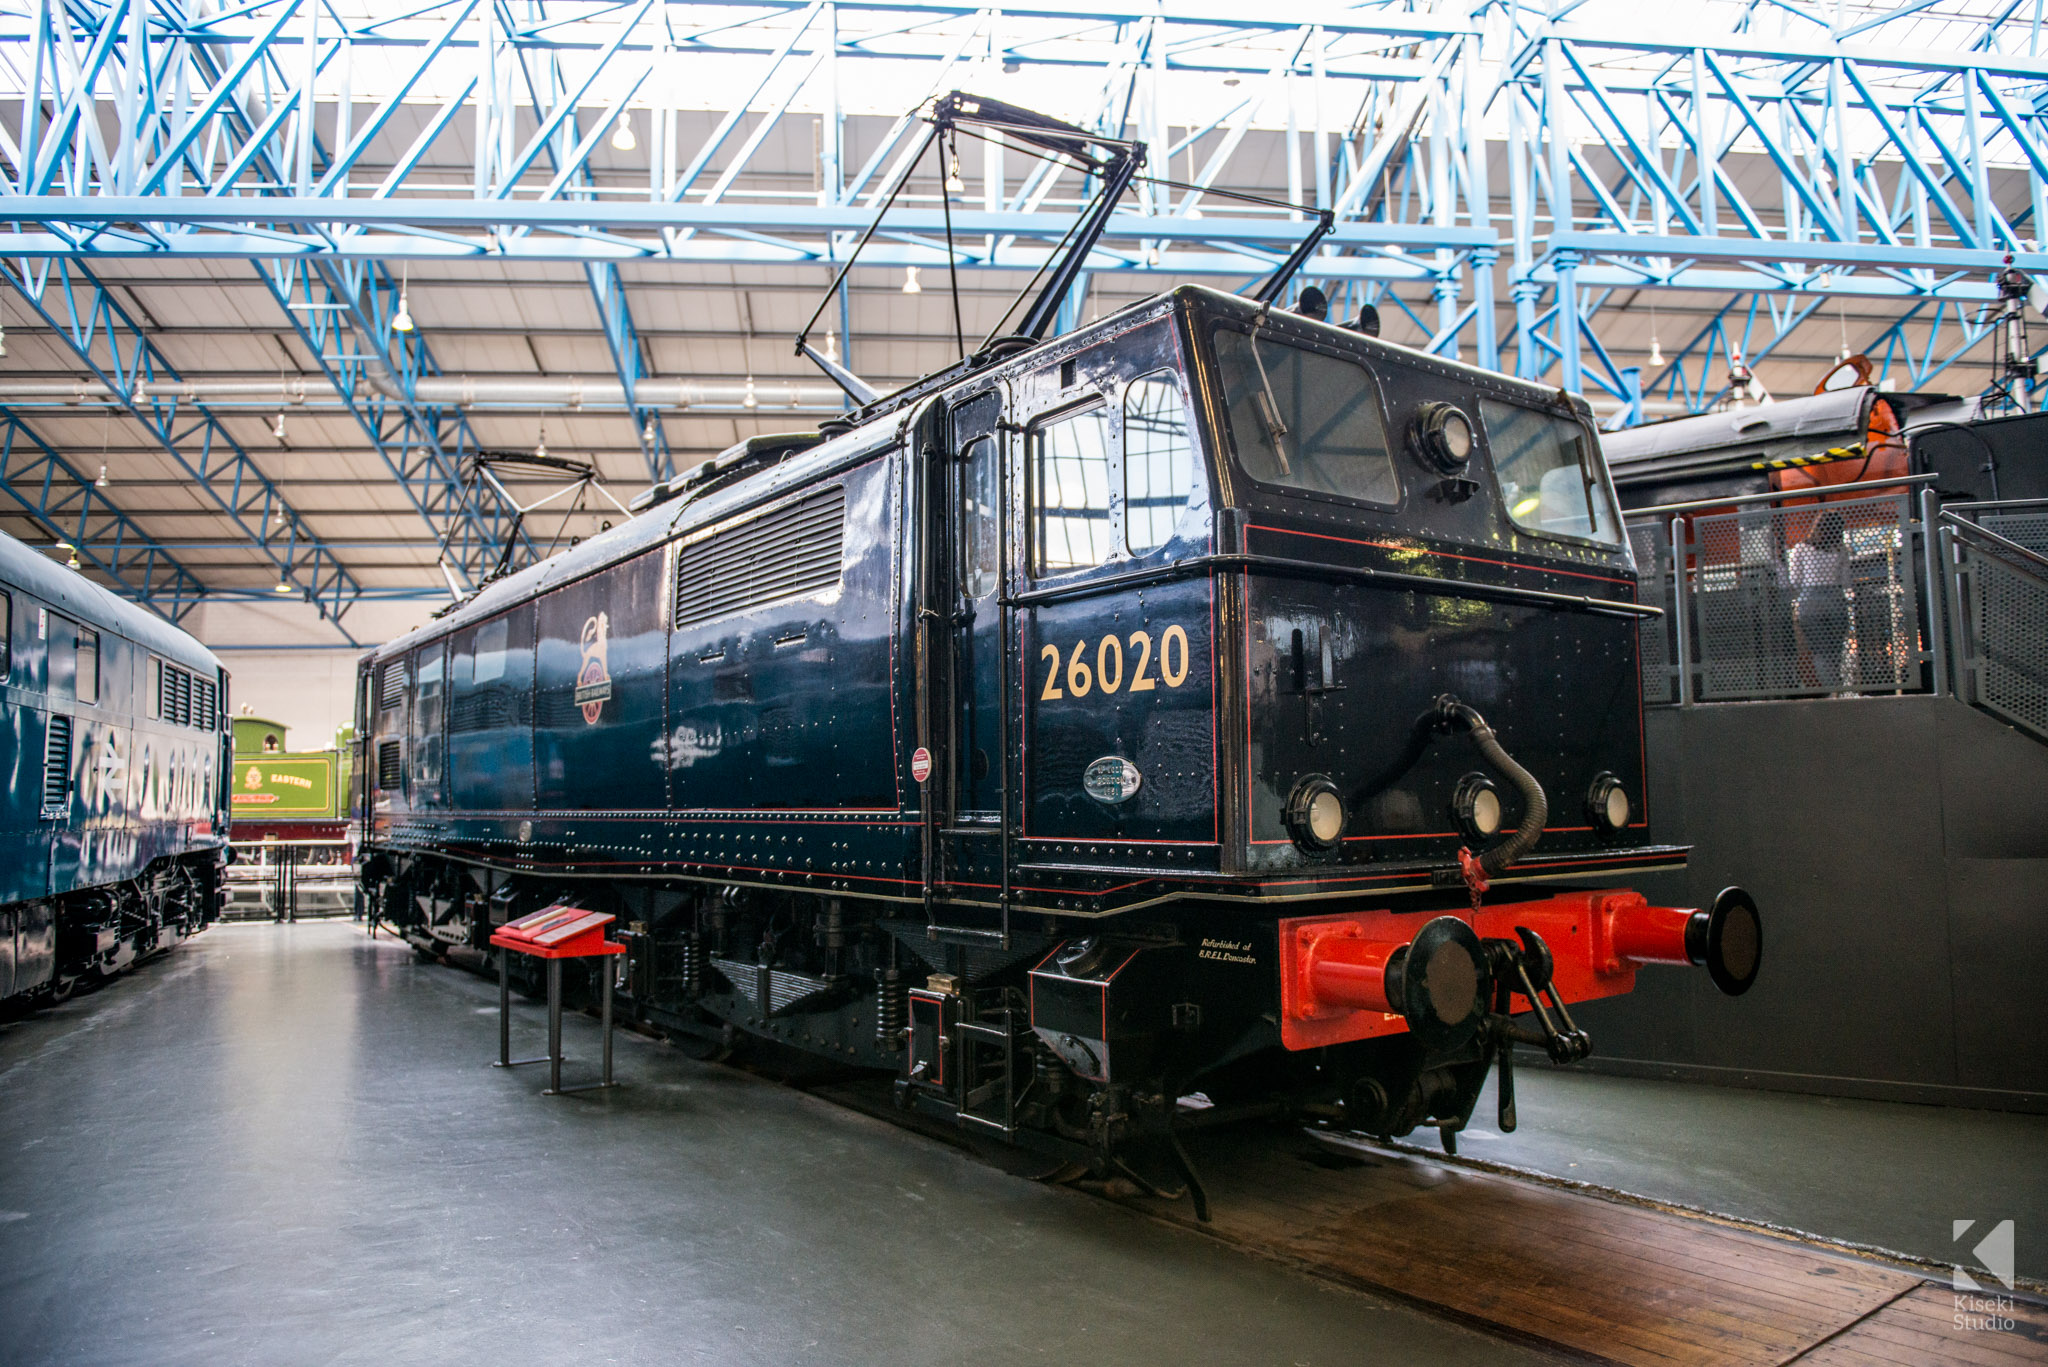 Electric locomotive, No. 26020